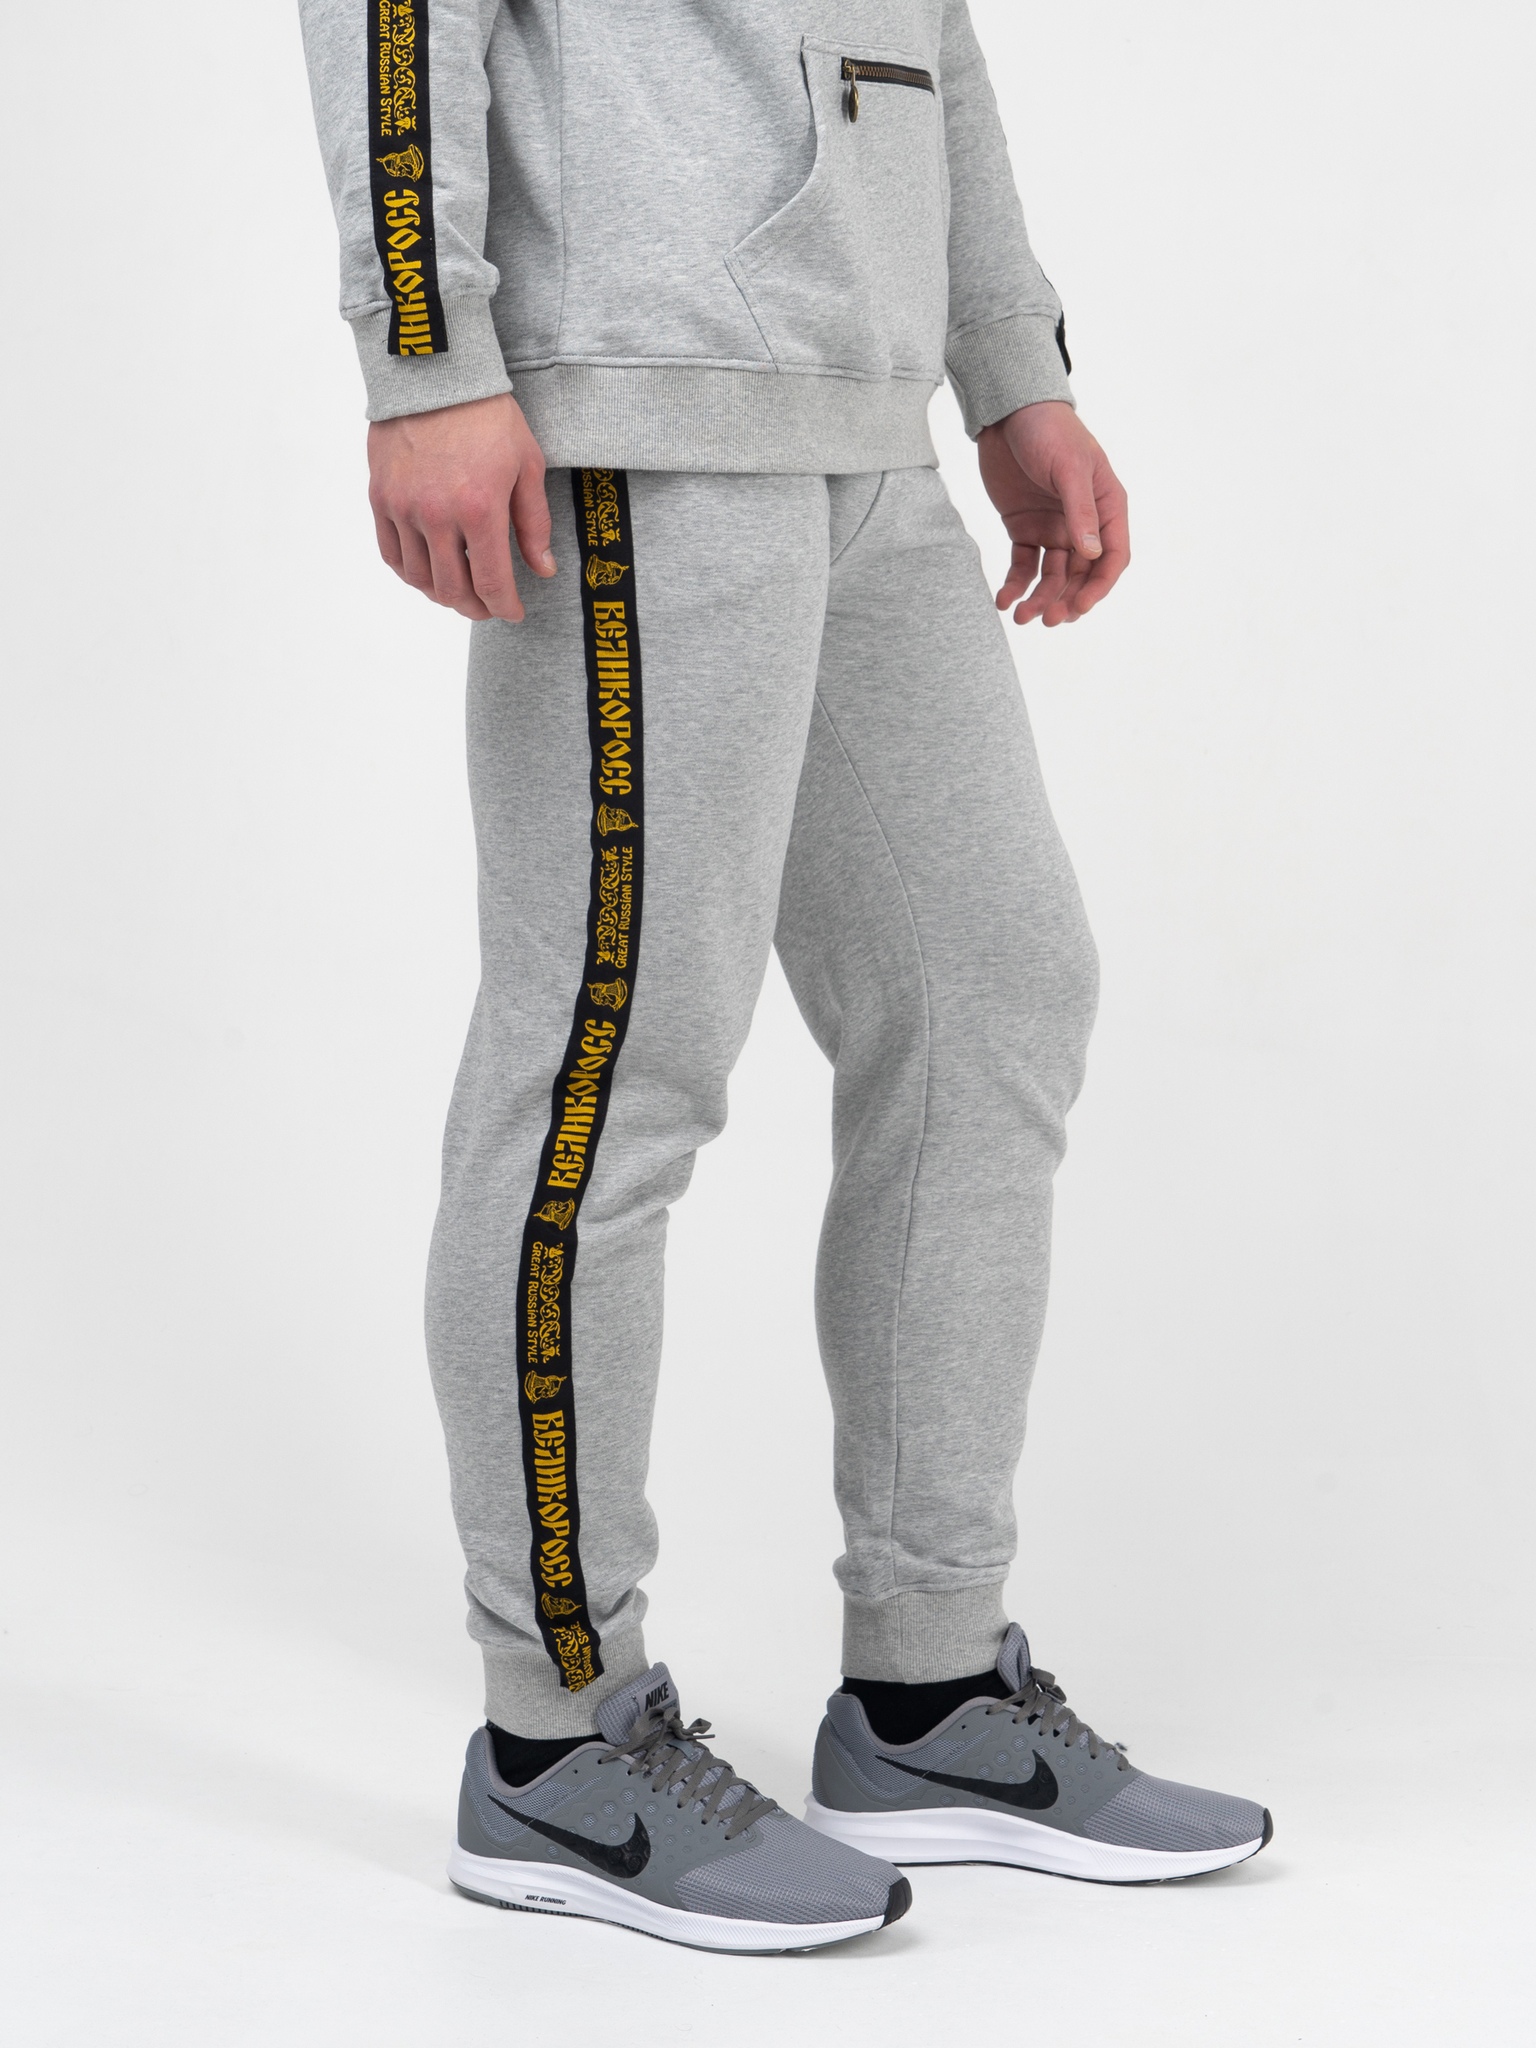 фото Спортивные брюки мужские великоросс bm серые 44 ru